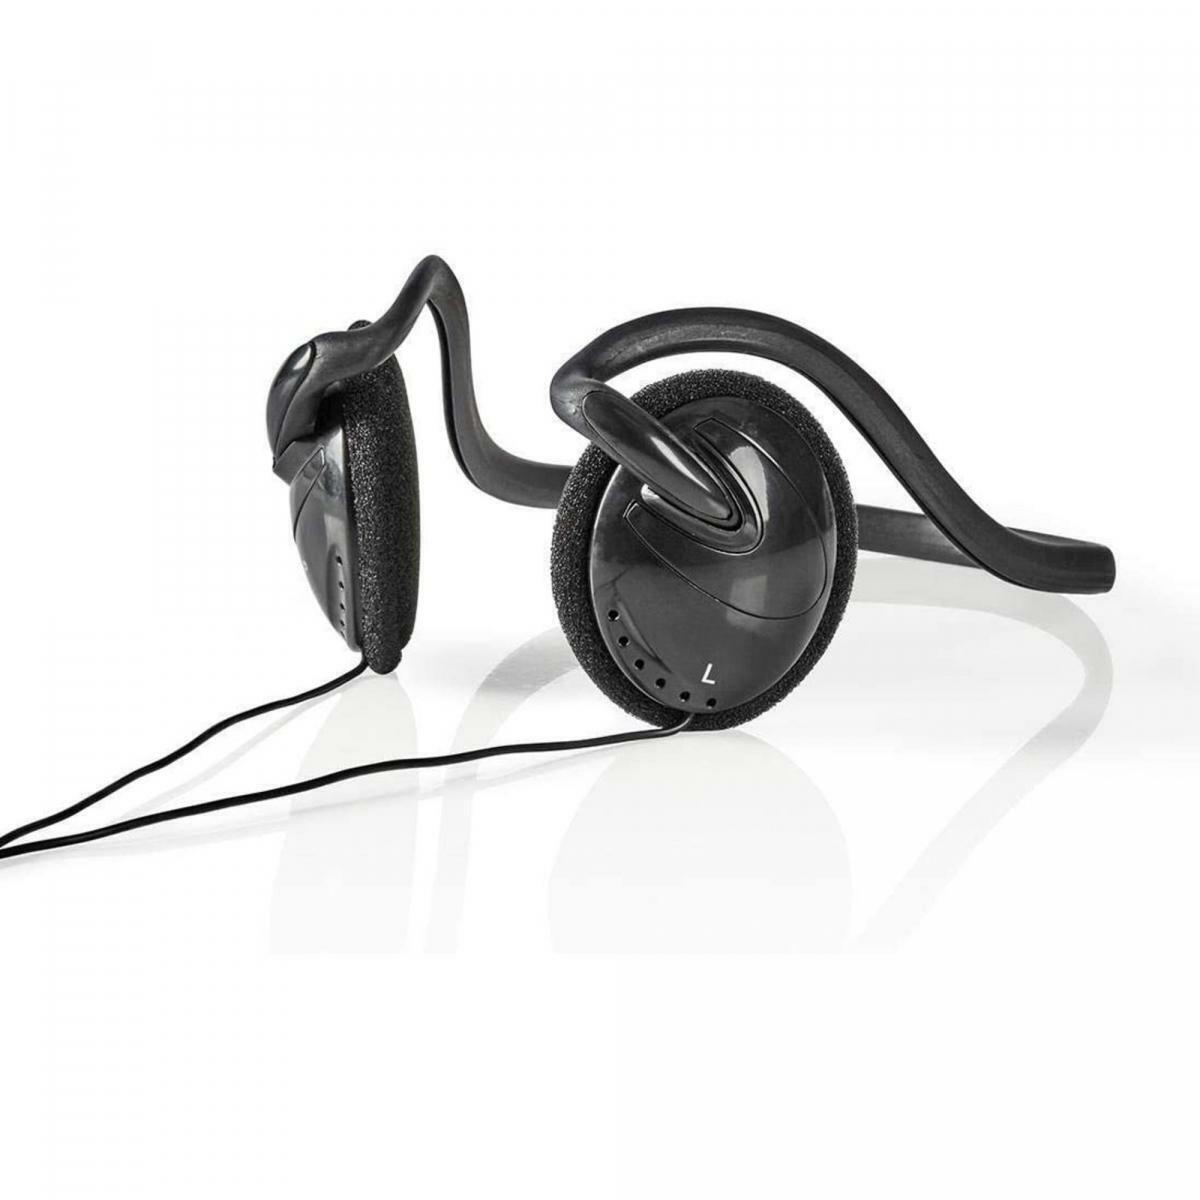 Sport Kopfhörer Nackenbügel 3,5mm kabelgebunden mit Kabel Handy Smartphone PC